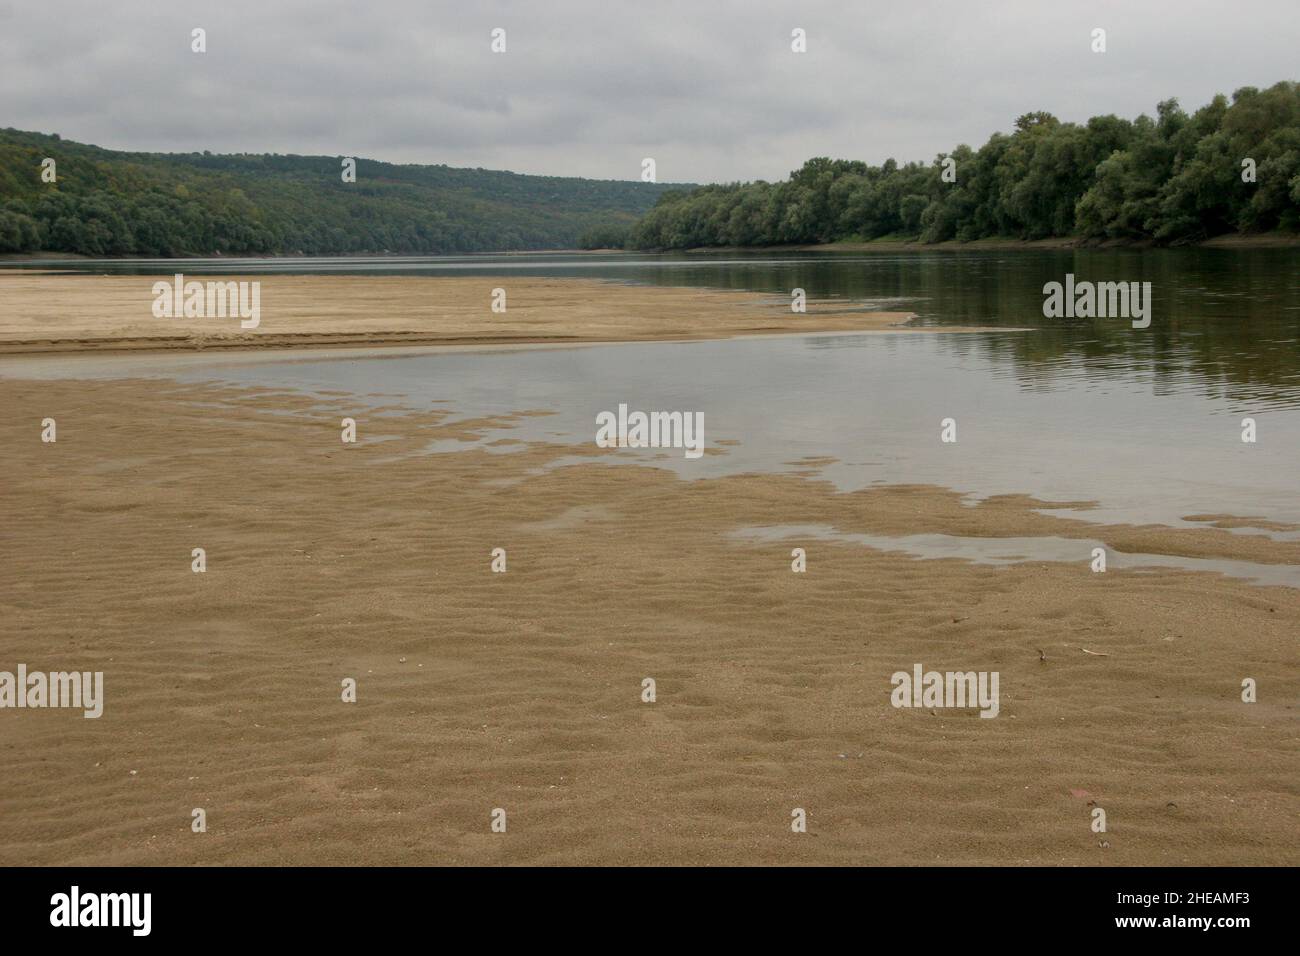 El río Danubio se ha secado, un brazo de río de la ciudad de Ruse. El fondo del río Danubio Foto de stock